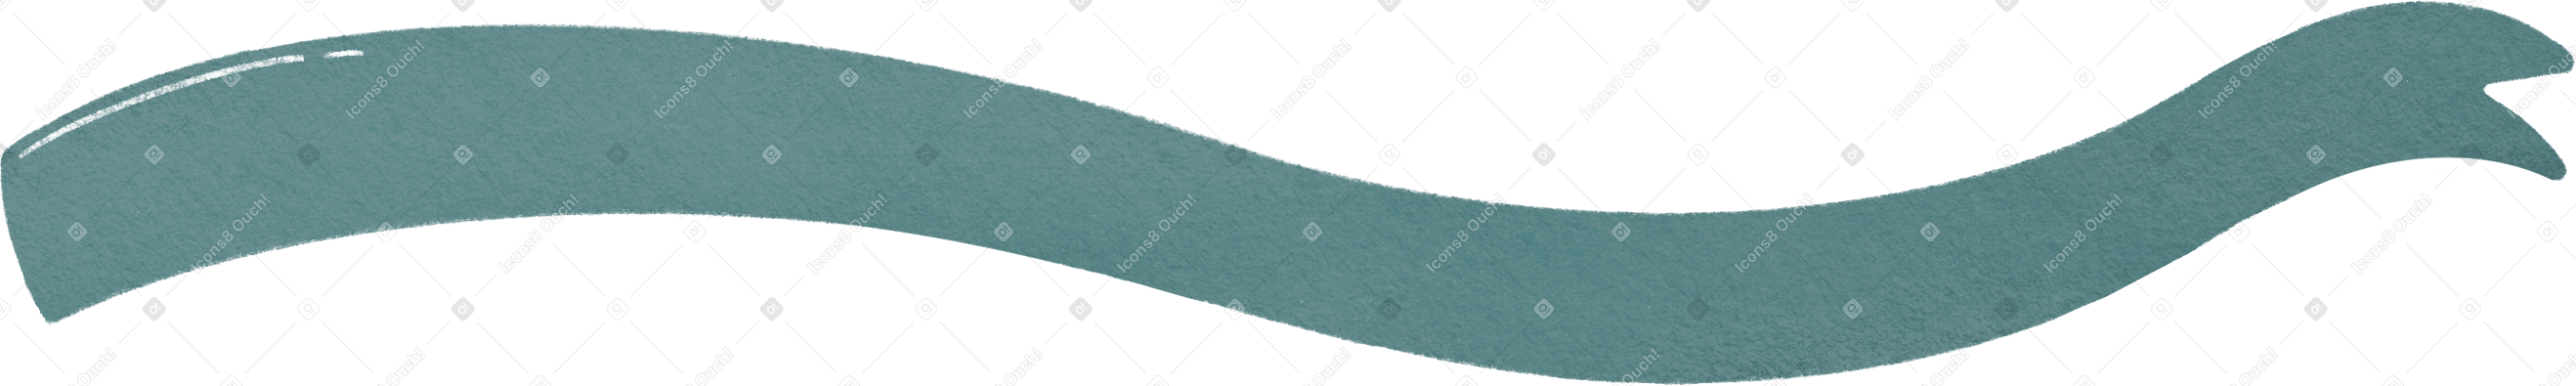 blue finish line ribbon Illustration in PNG, SVG